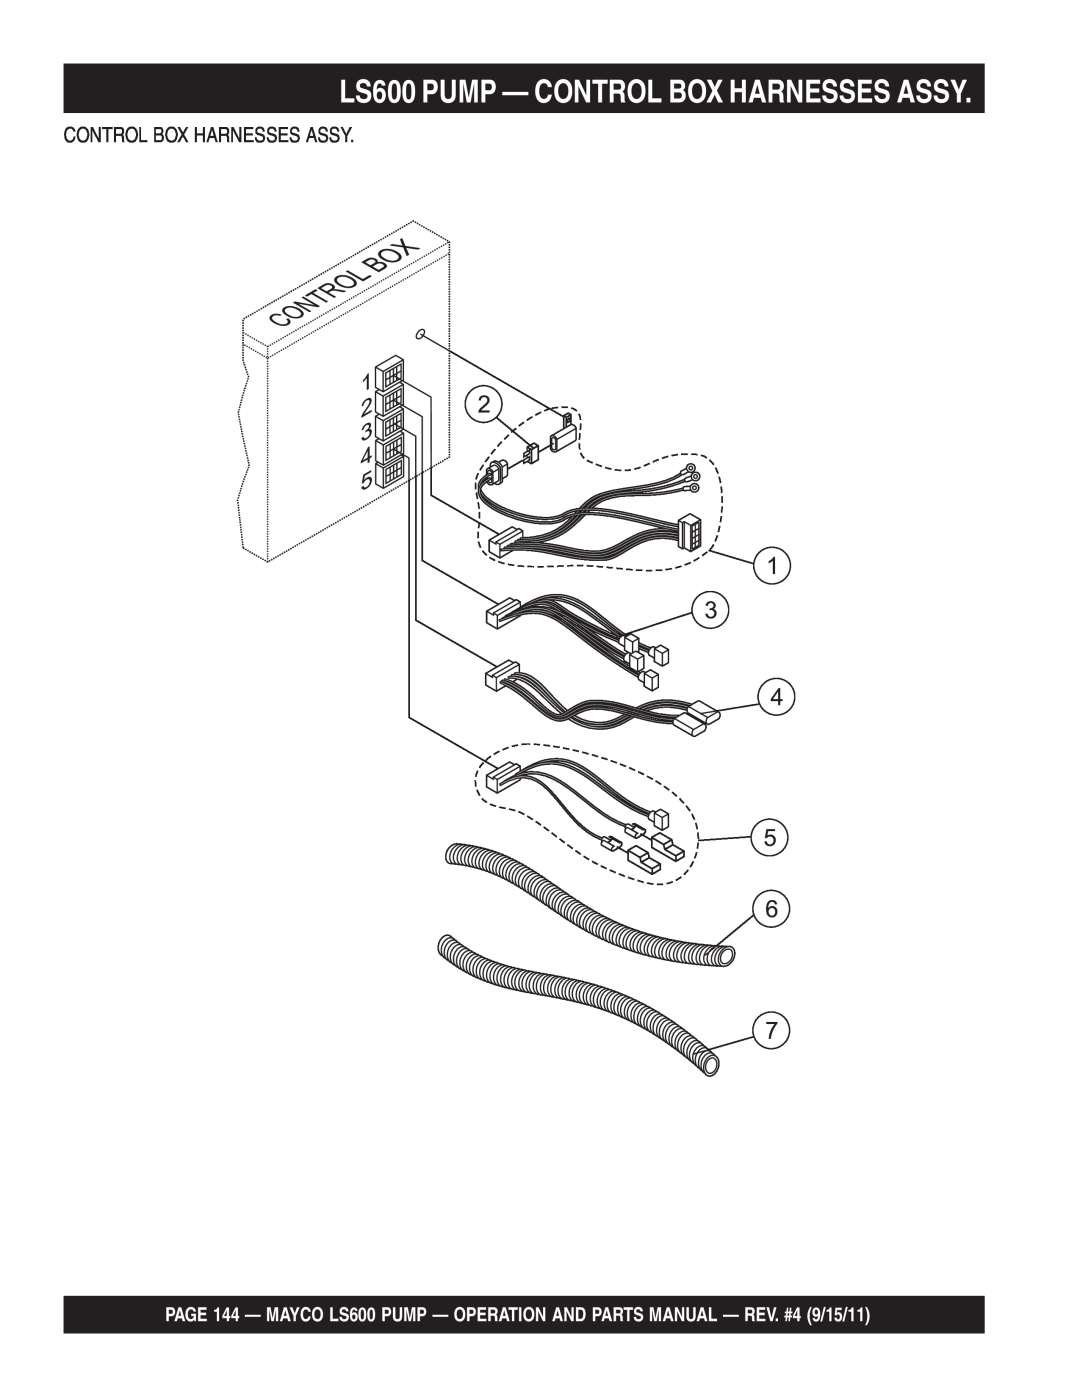 Multiquip manual LS600 PUMP — CONTROL BOX HARNESSES ASSY, Control Box Harnesses Assy 